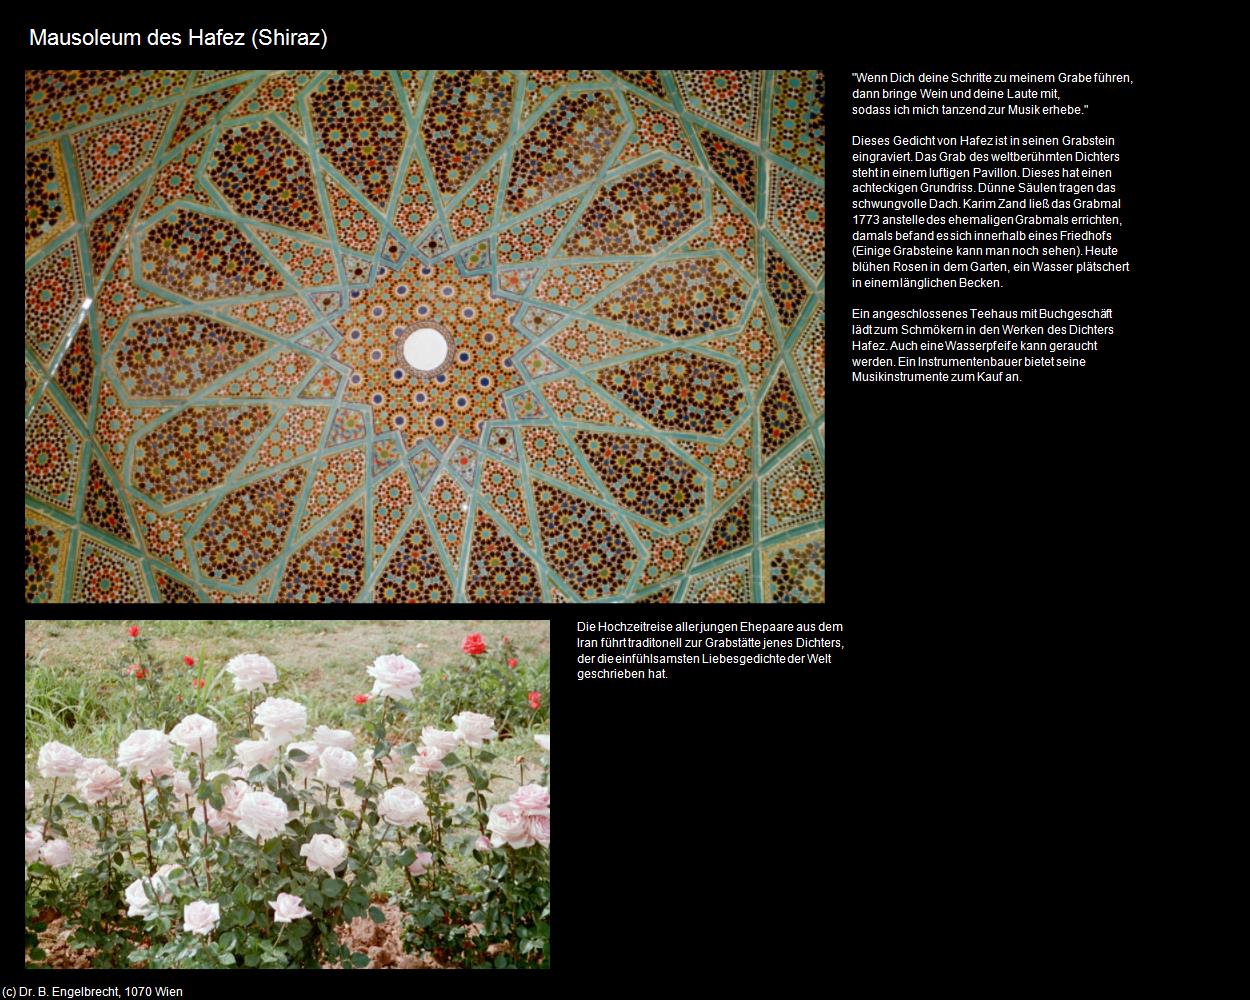 Mausoleum des Hafez (Shiraz) in Iran